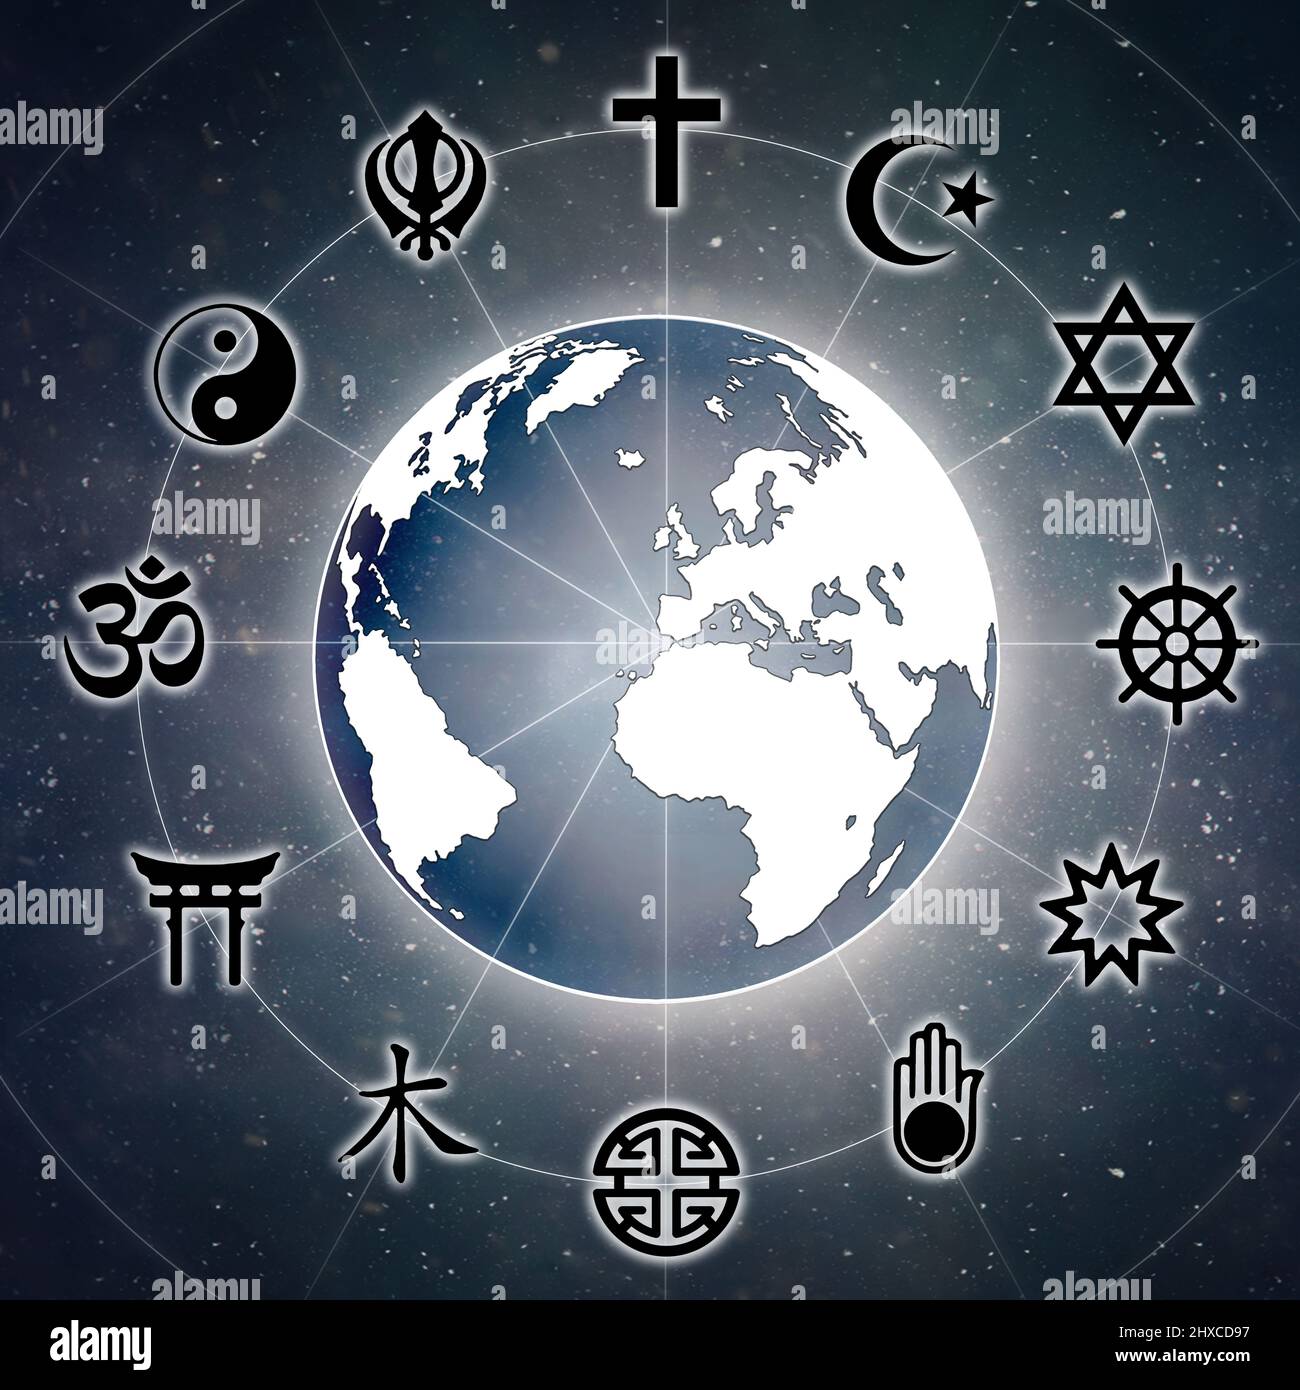 Représentation d'un globe avec les symboles religieux les plus représentatifs et le fond de l'univers avec des étoiles. Banque D'Images